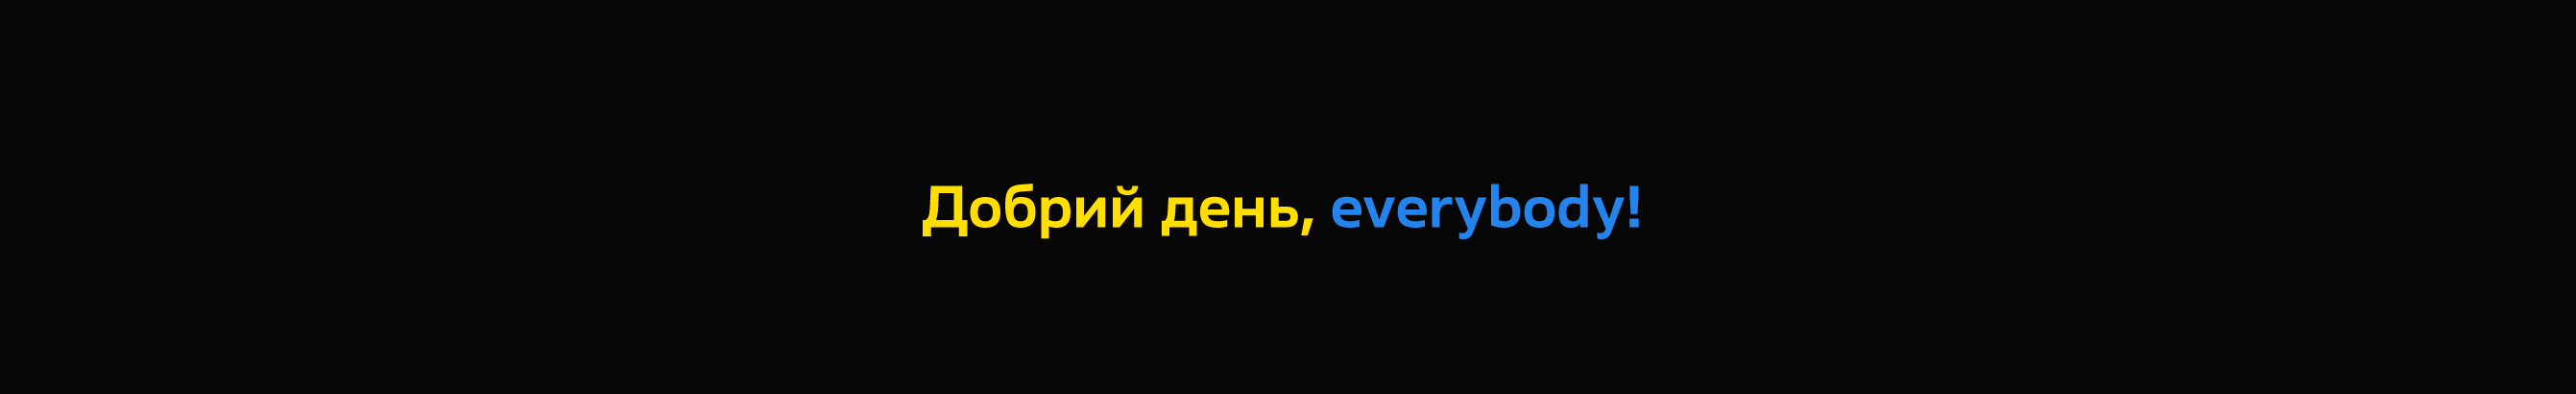 Oleh Lishchuk's profile banner